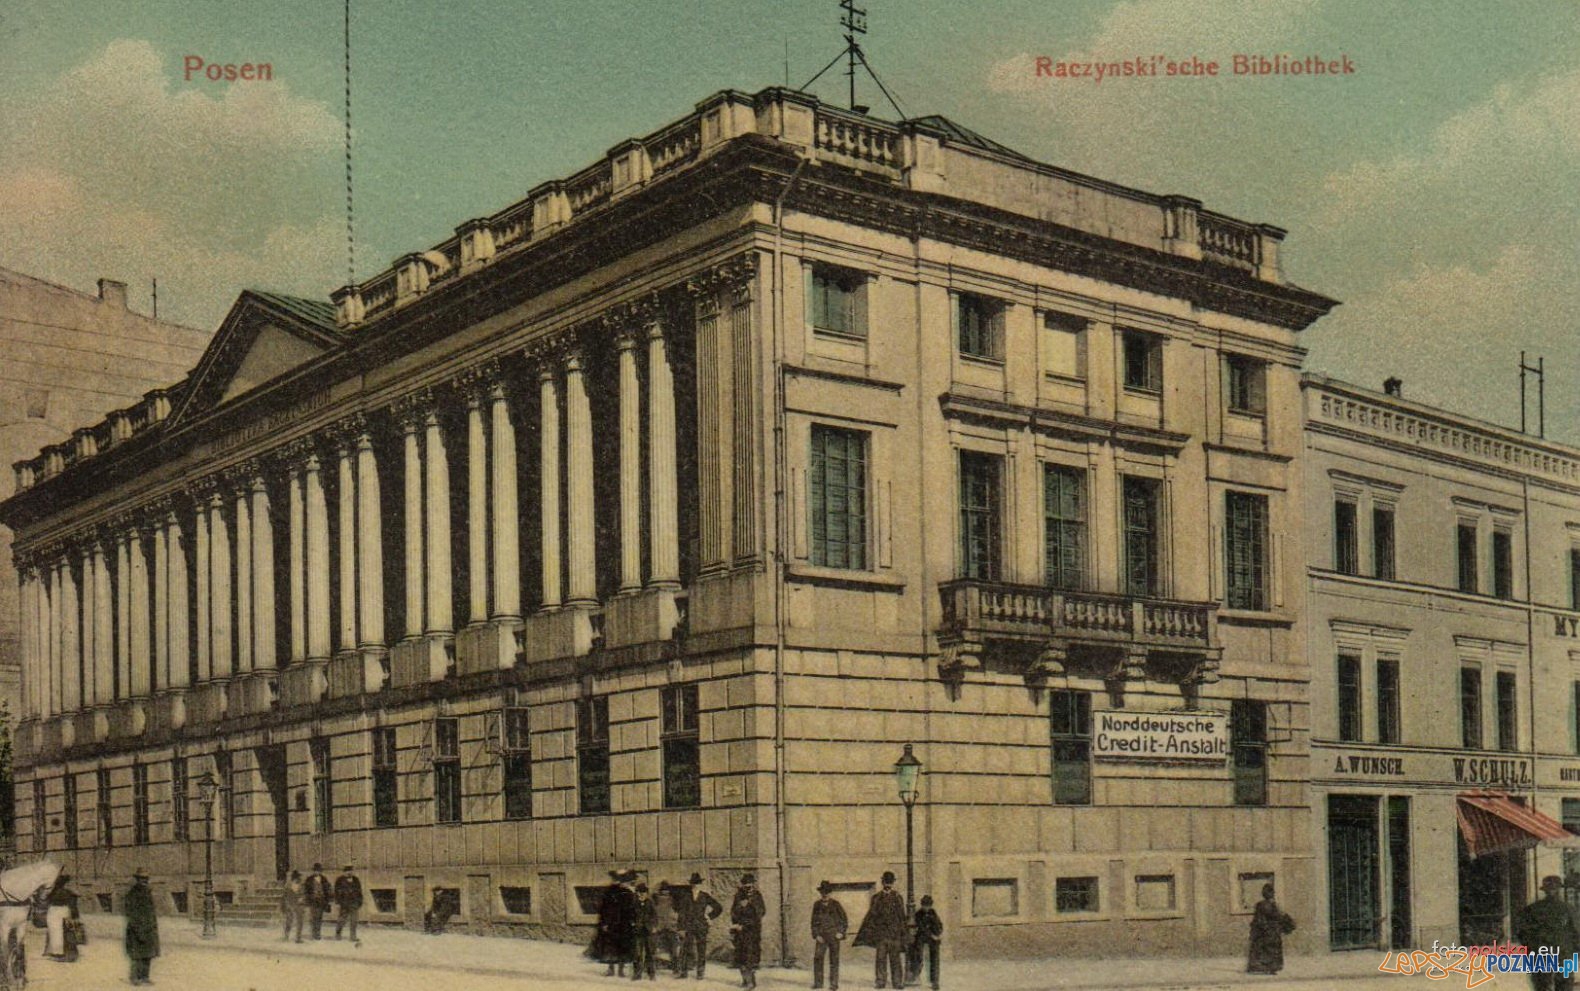 Biblioteka Raczynskich 1912  Foto: fotopolska